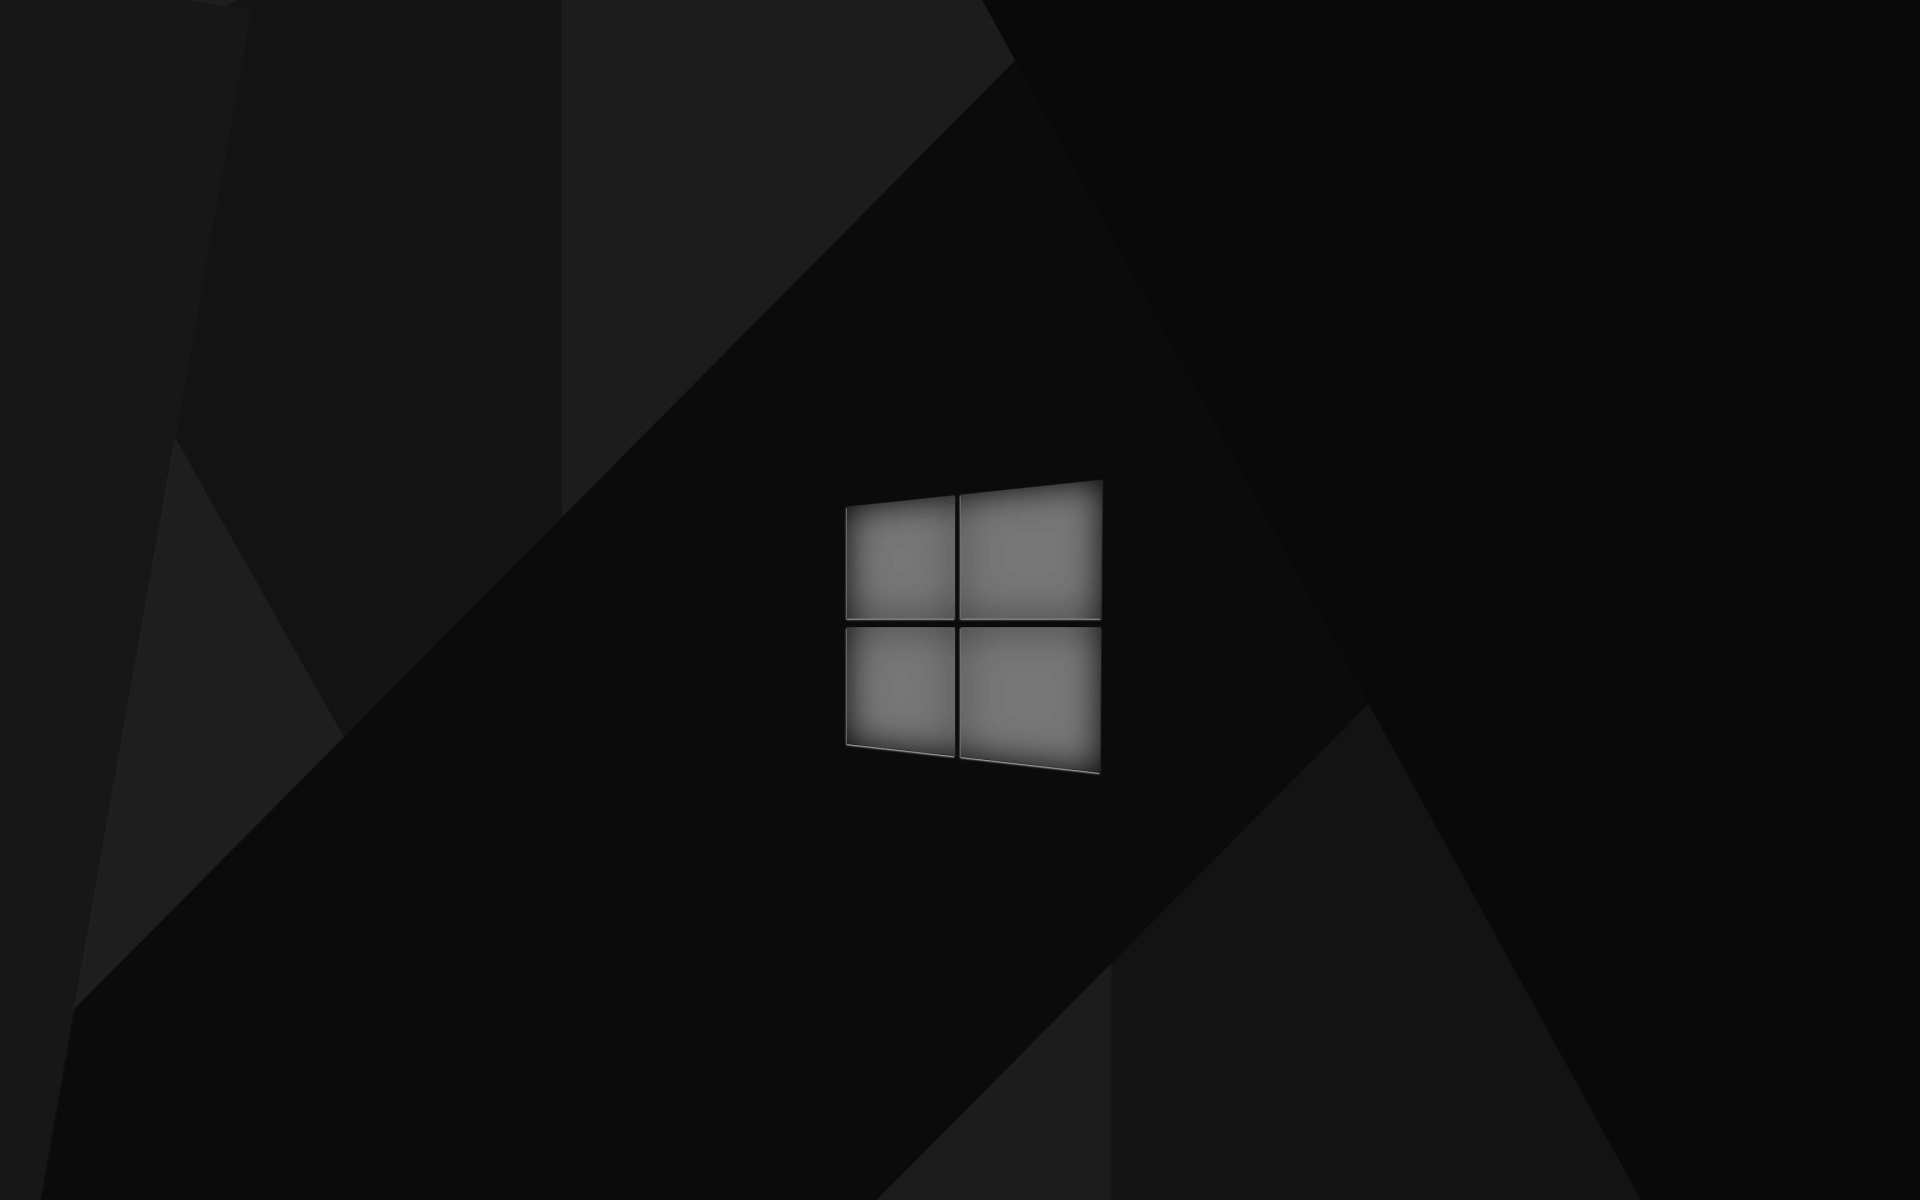 1920x1200 Windows 10 Material Design 1200p Wallpaper Hd Minimalist 4k